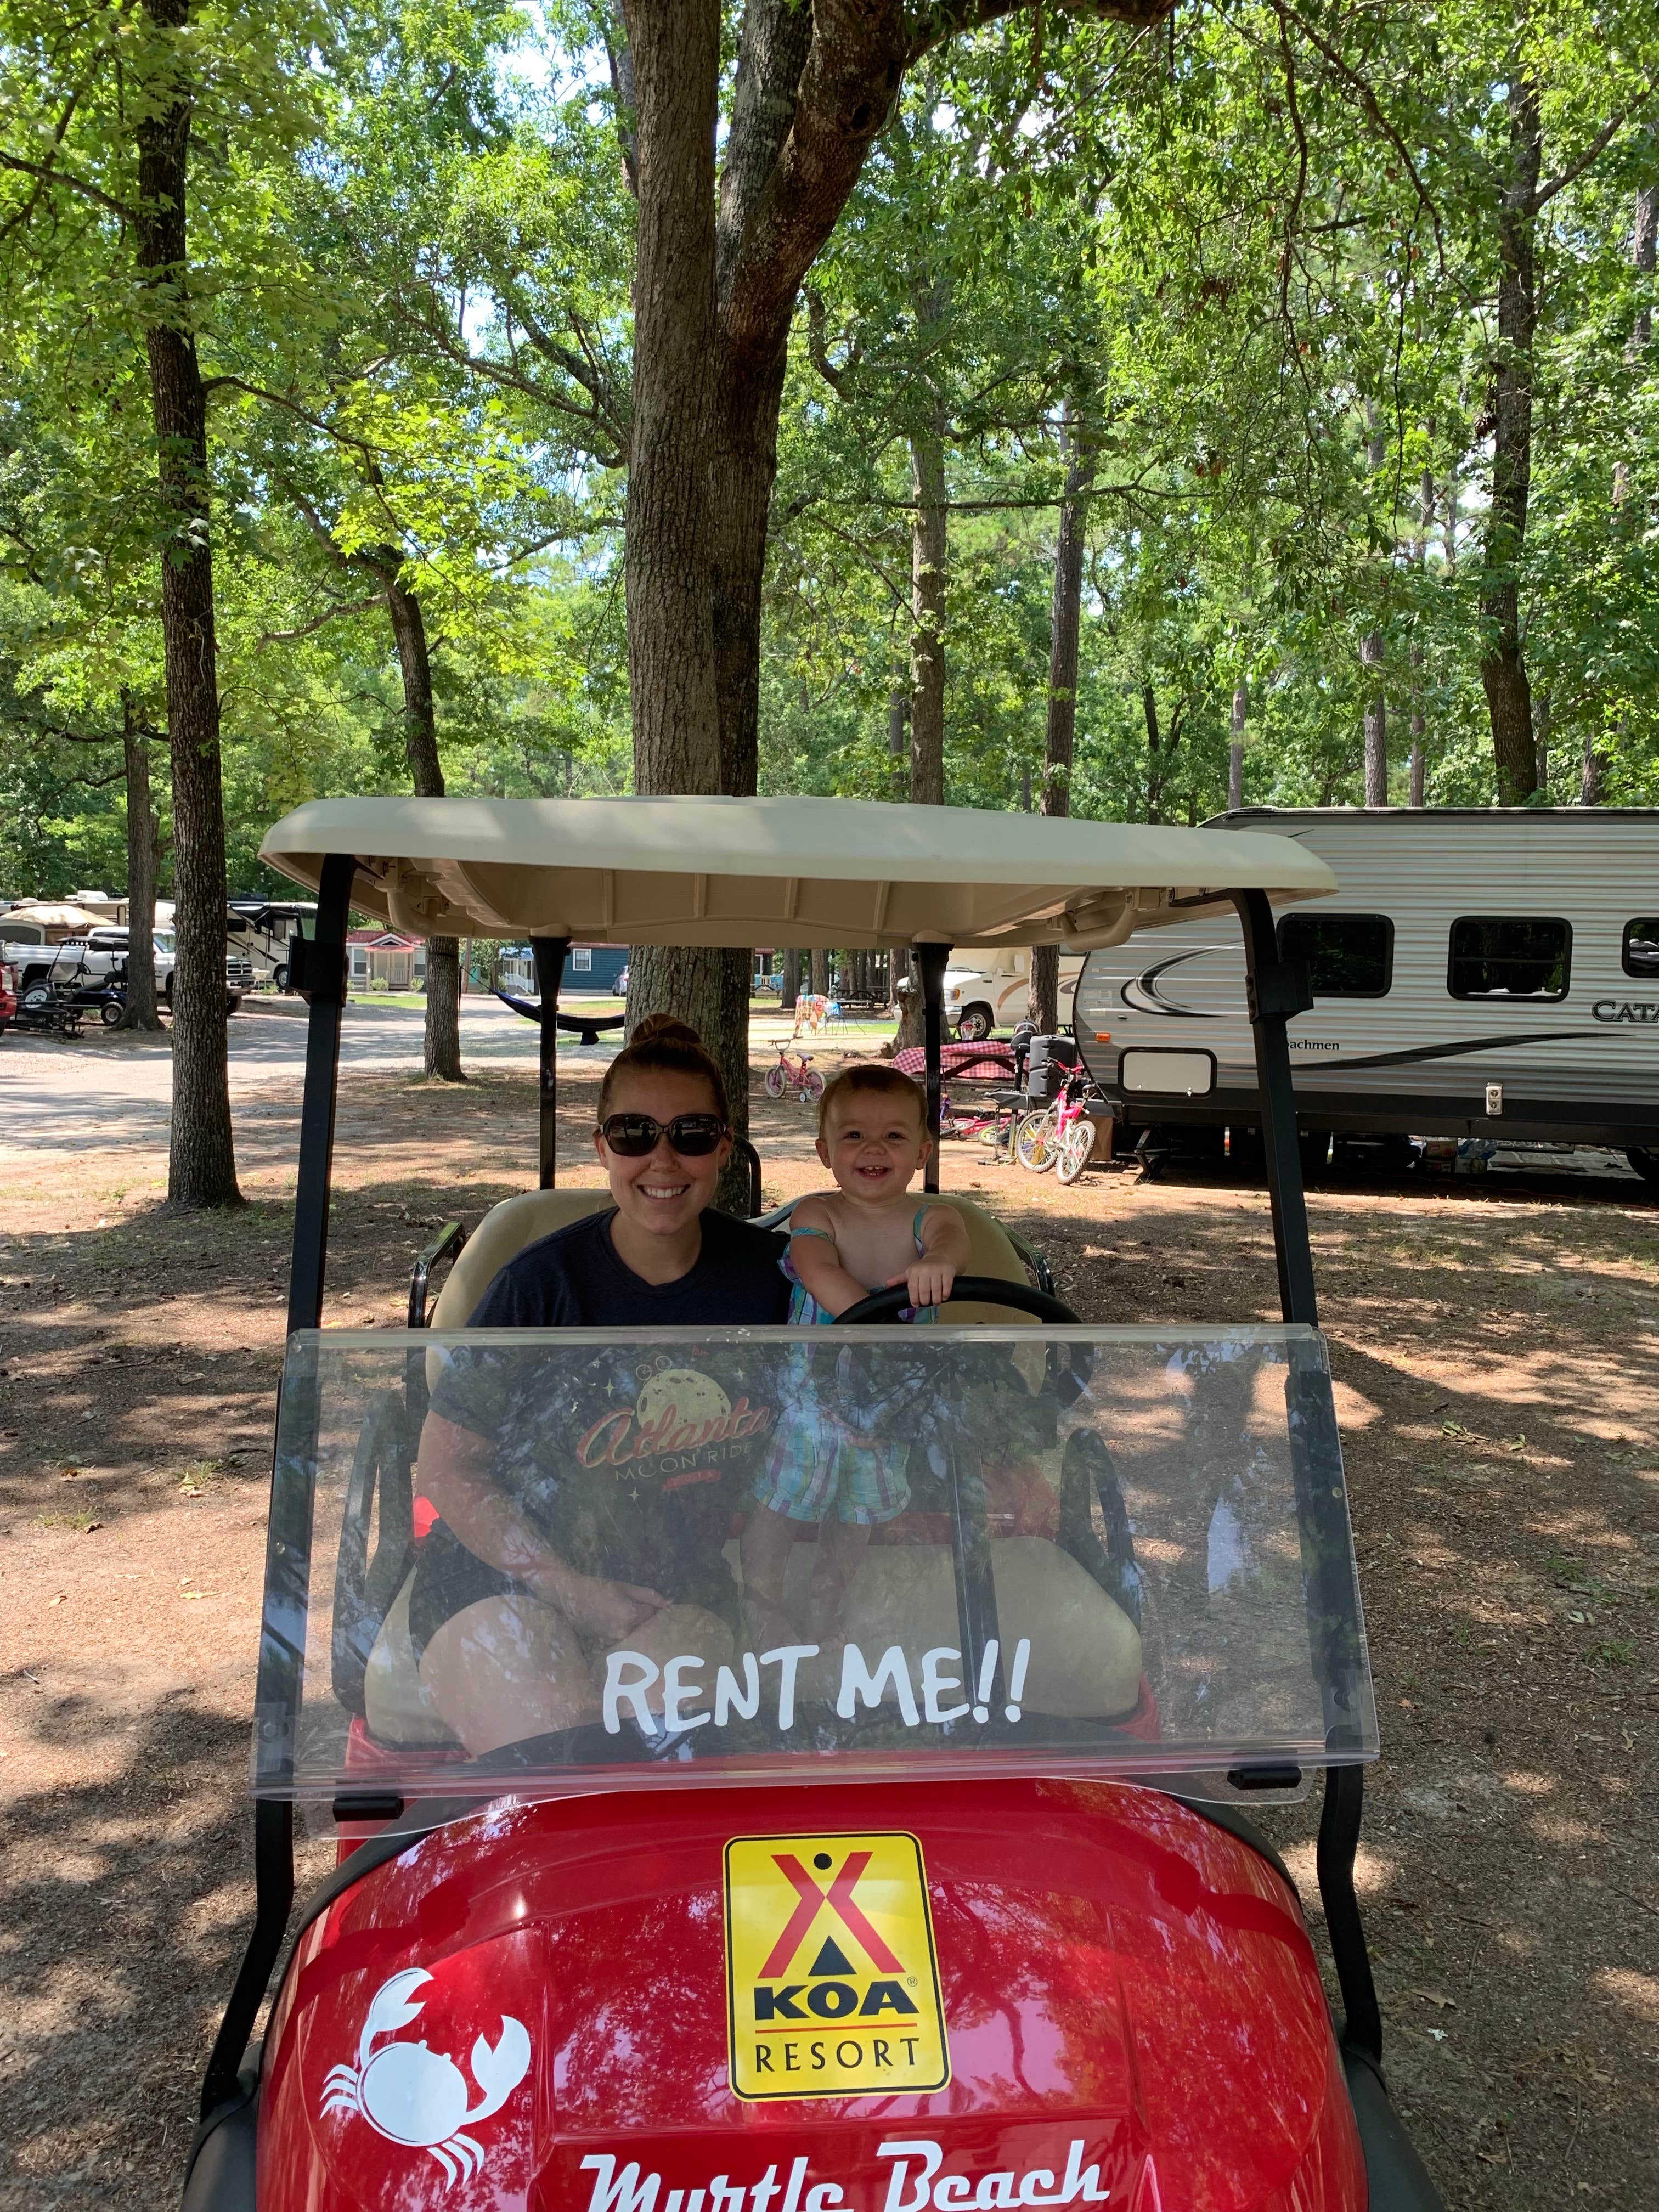 Rental golf cart